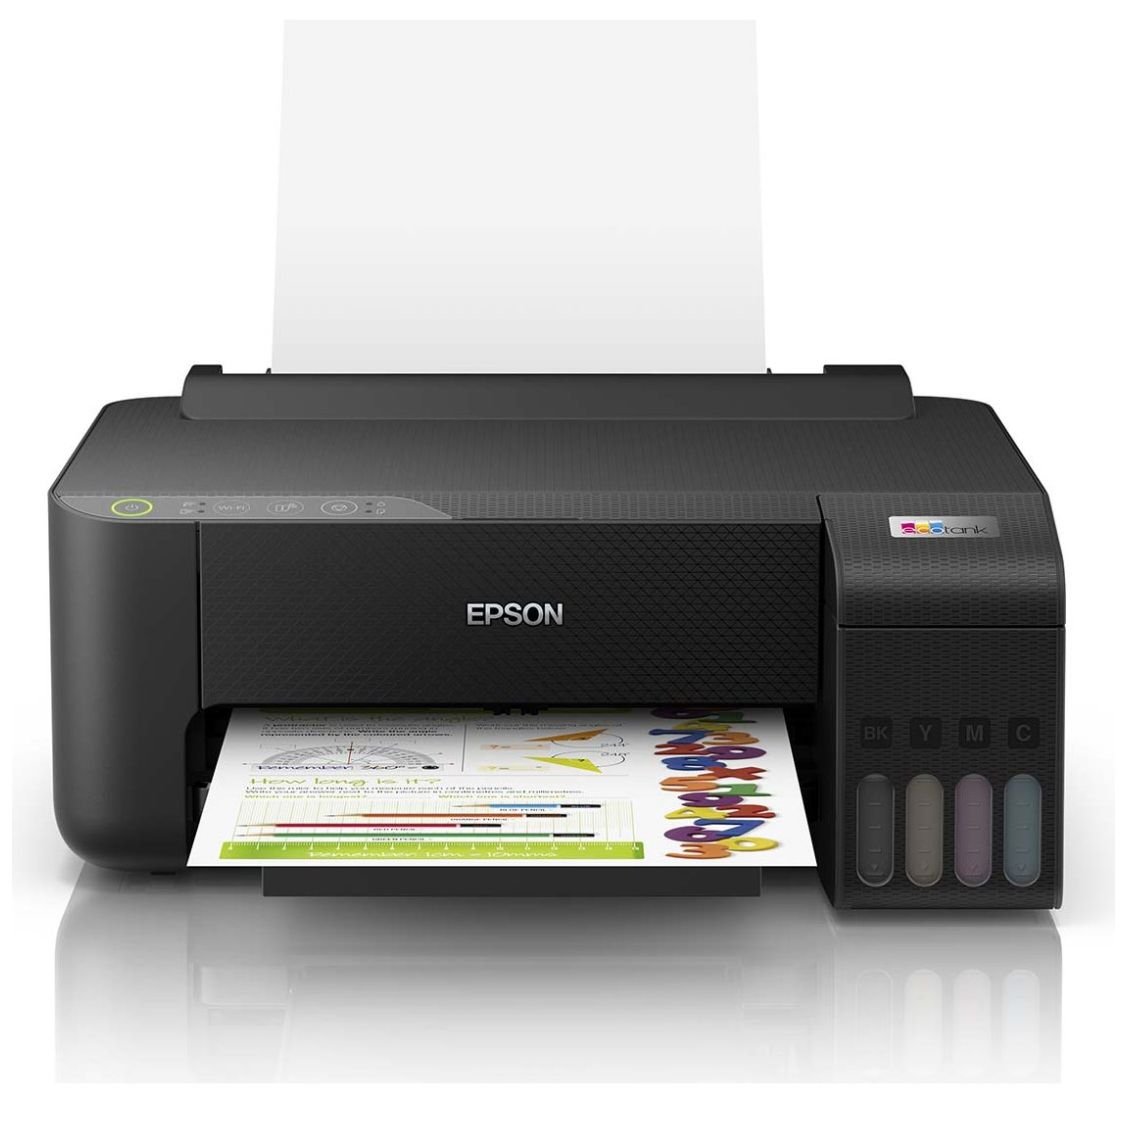 Impresora multifunción Epson en Oferta